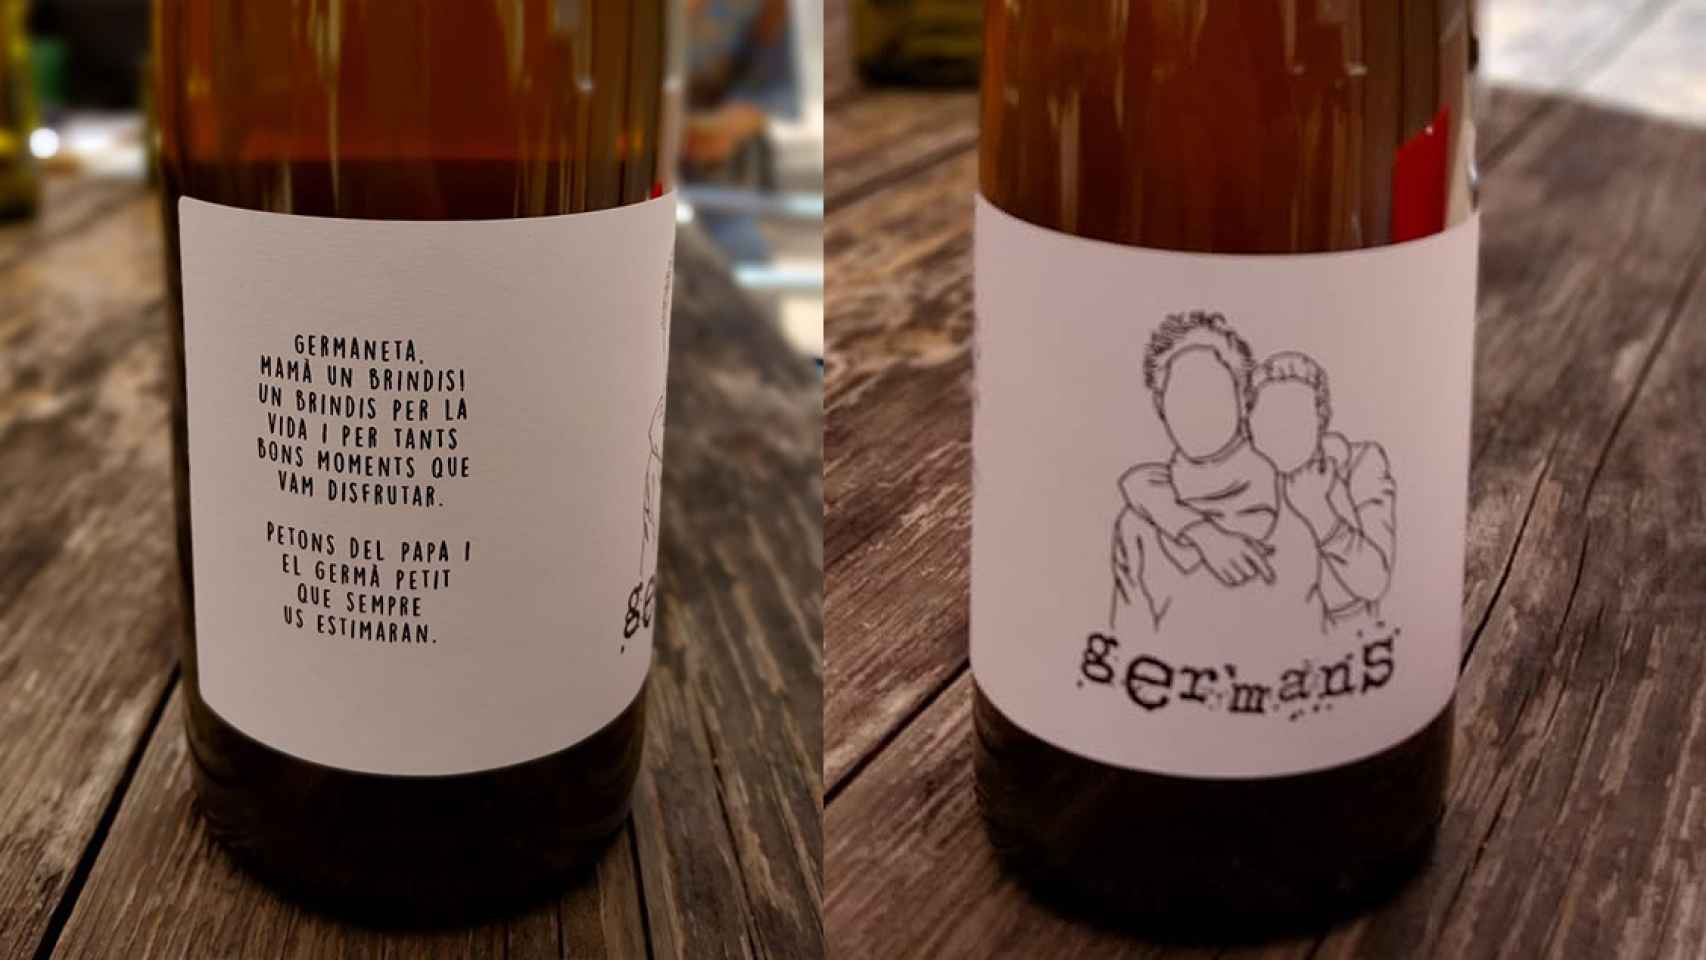 De la uva al corazón: 'Germans', un vino solidario  en homenaje a dos mujeres fallecidas por cáncer